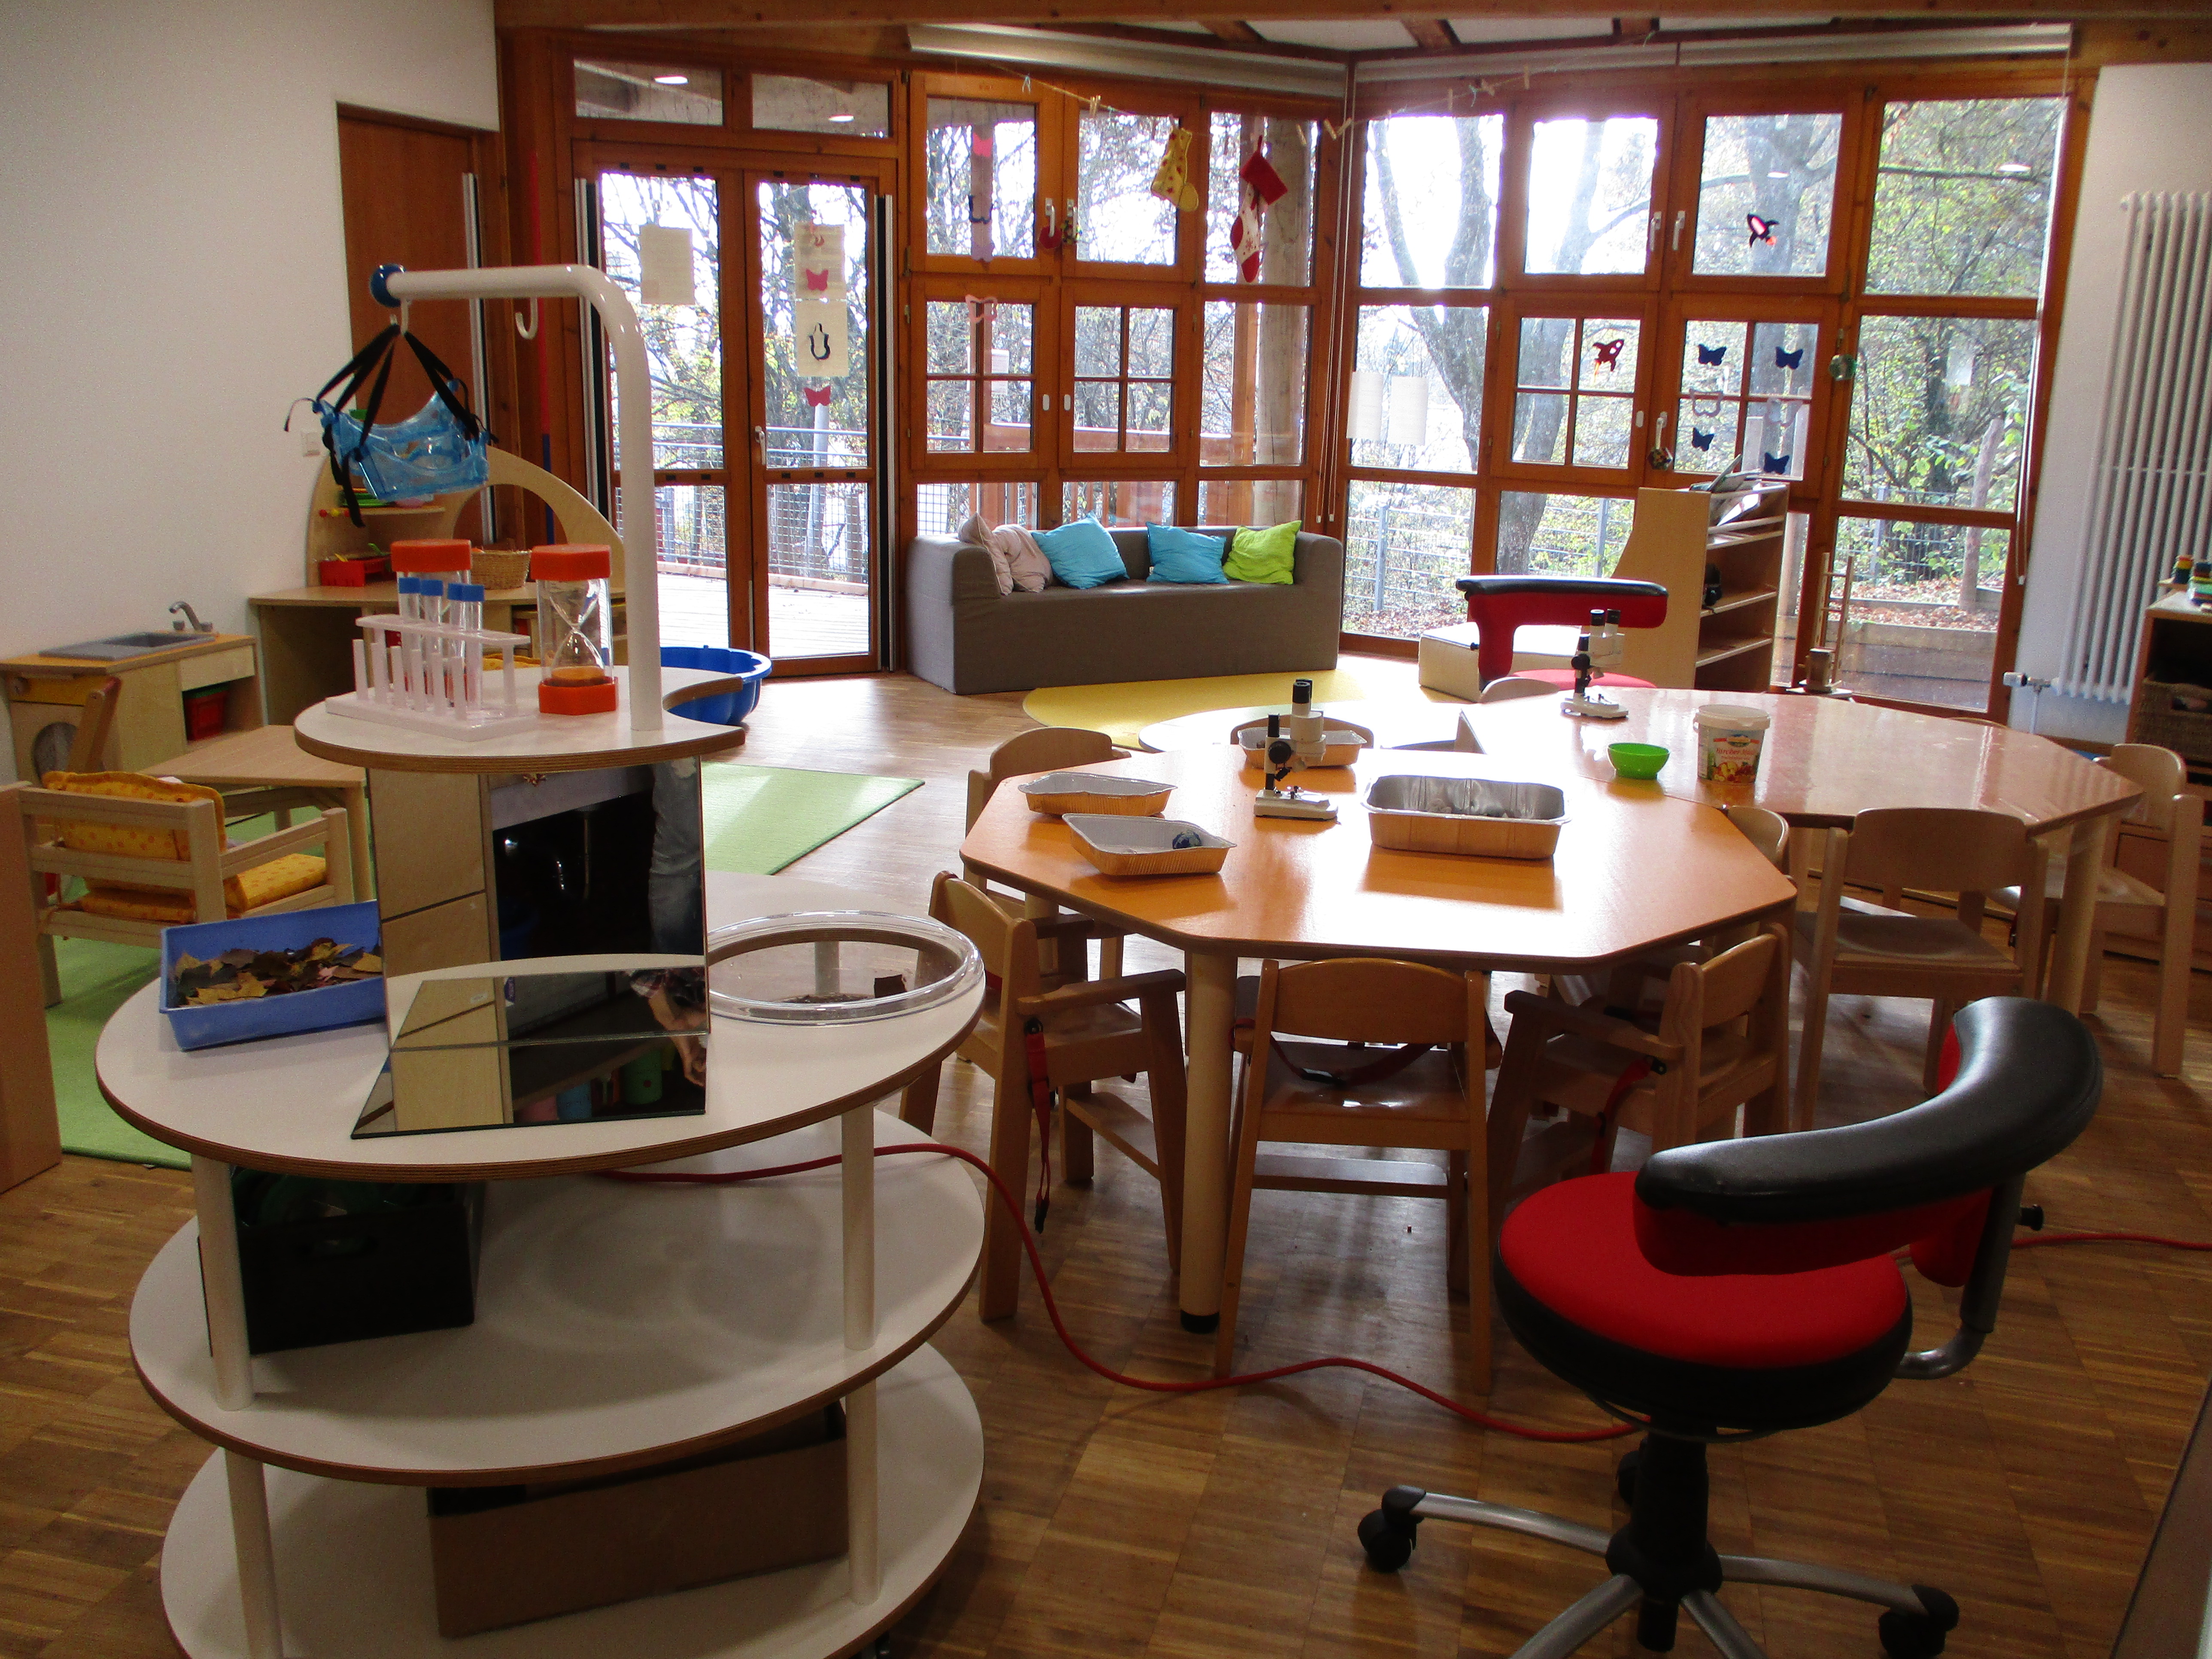 Der Gruppenraum ist unterteilt in eine Leseecke am Fensert mit grauem Sofa mit Kissen, links eine Rollenspielecke. Im Vordergrund steht ein runder Tisch zum forschen, dahinter stehen zwei runde Tische mit Stühlen.